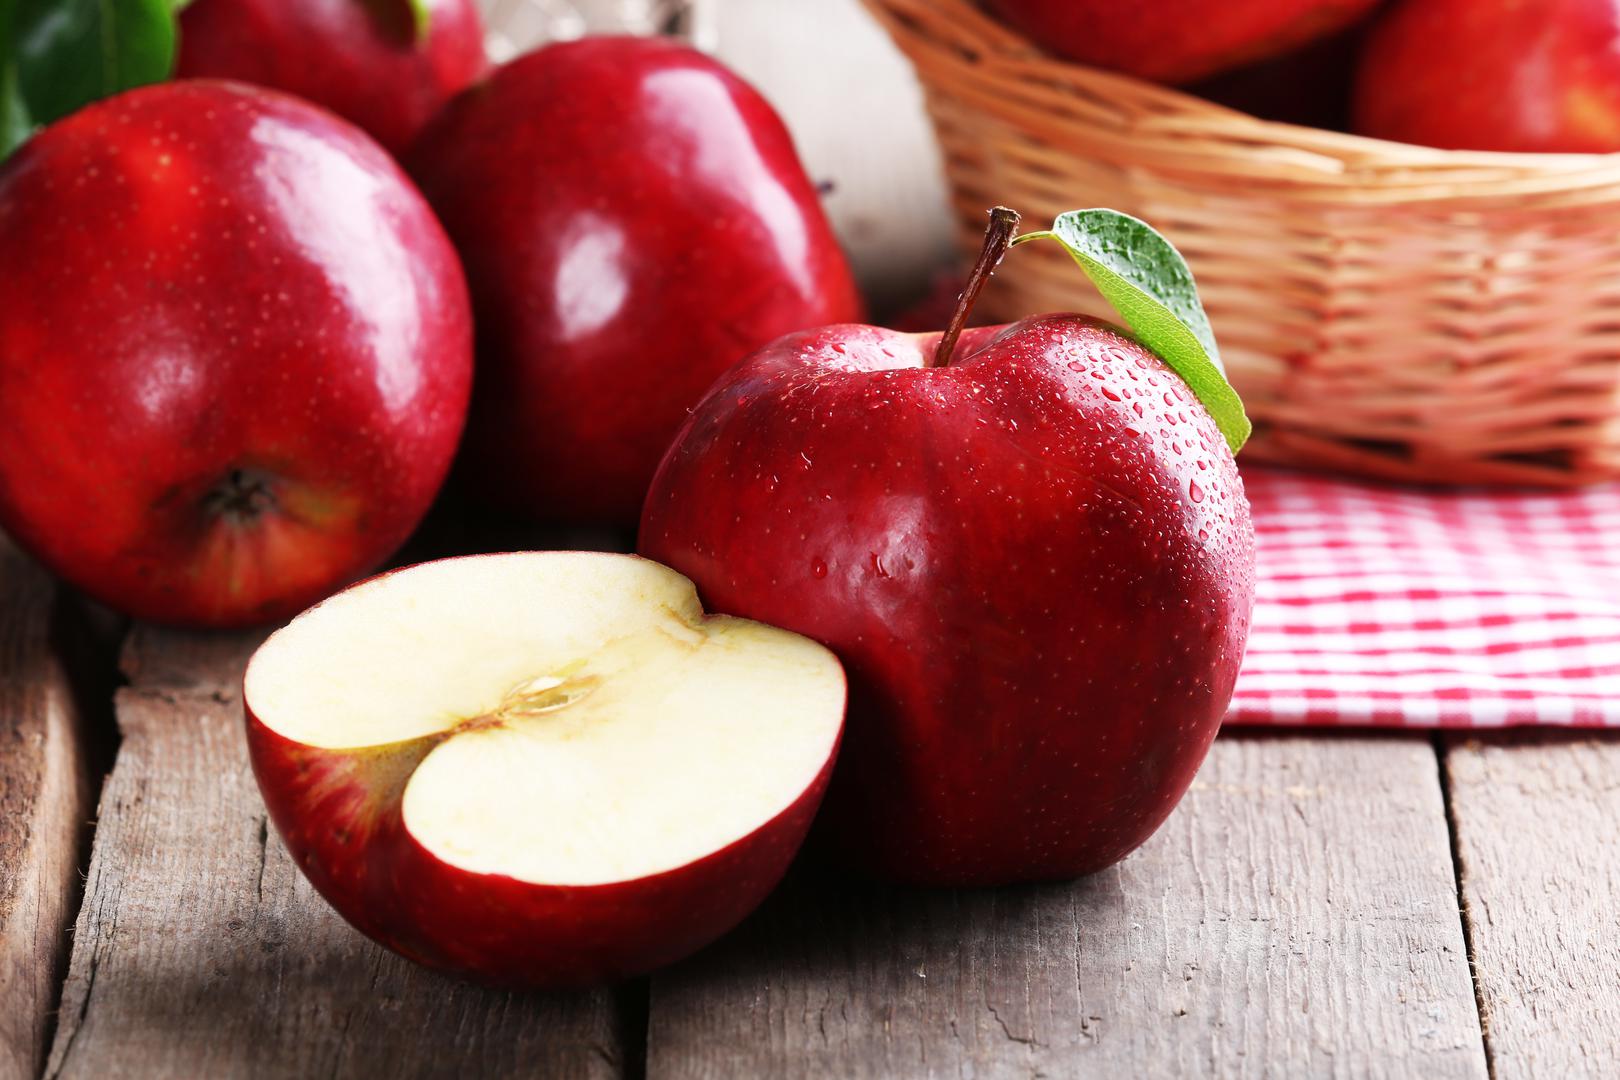 Jezgra jabuke: Prema istraživanjima, glavnina dobrih bakterija jabuke nalazi se u njezinim sjemenkama. Ako preskočite jesti srž, propustit ćete veliku probavnu pomoć. "Pronađite recept i napravite vlastiti ocat od jabuka ", kaže Brock, suradnik tvrtke Imperfect Foods. "Osim jezgri jabuka, jedini sastojci koji su vam potrebni su žlica šećera i deklorirana voda. Potrebno je samo nekoliko dana fermentacije, a vi imate domaći wellness pripravak koji se može koristiti na čitav niz načina", kaže Brock.